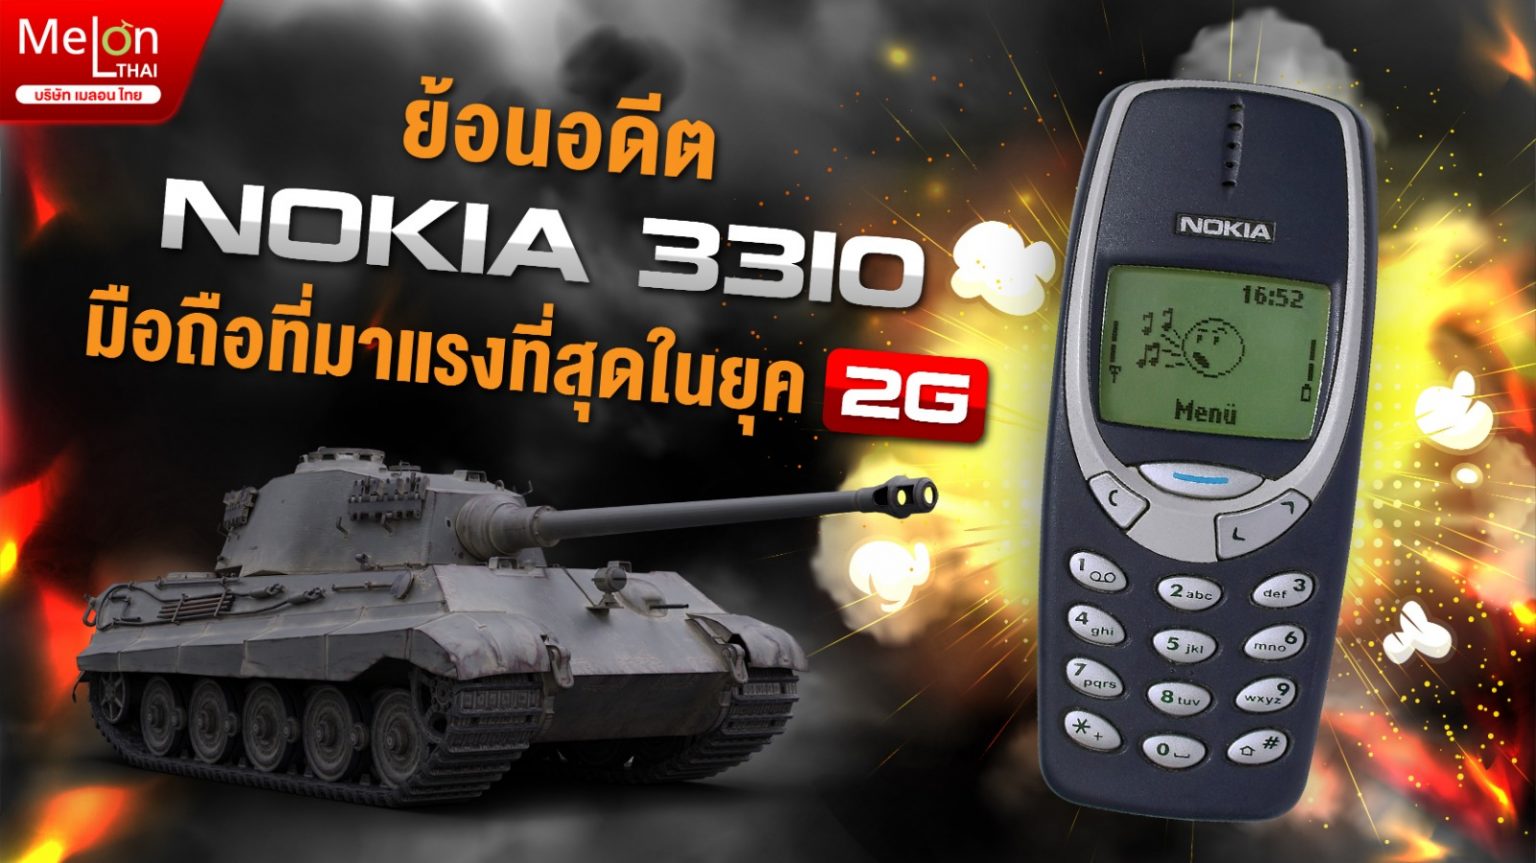 ย้อนอดีต Nokia3310 มือถือที่มาแรงที่สุดในยุค 2G